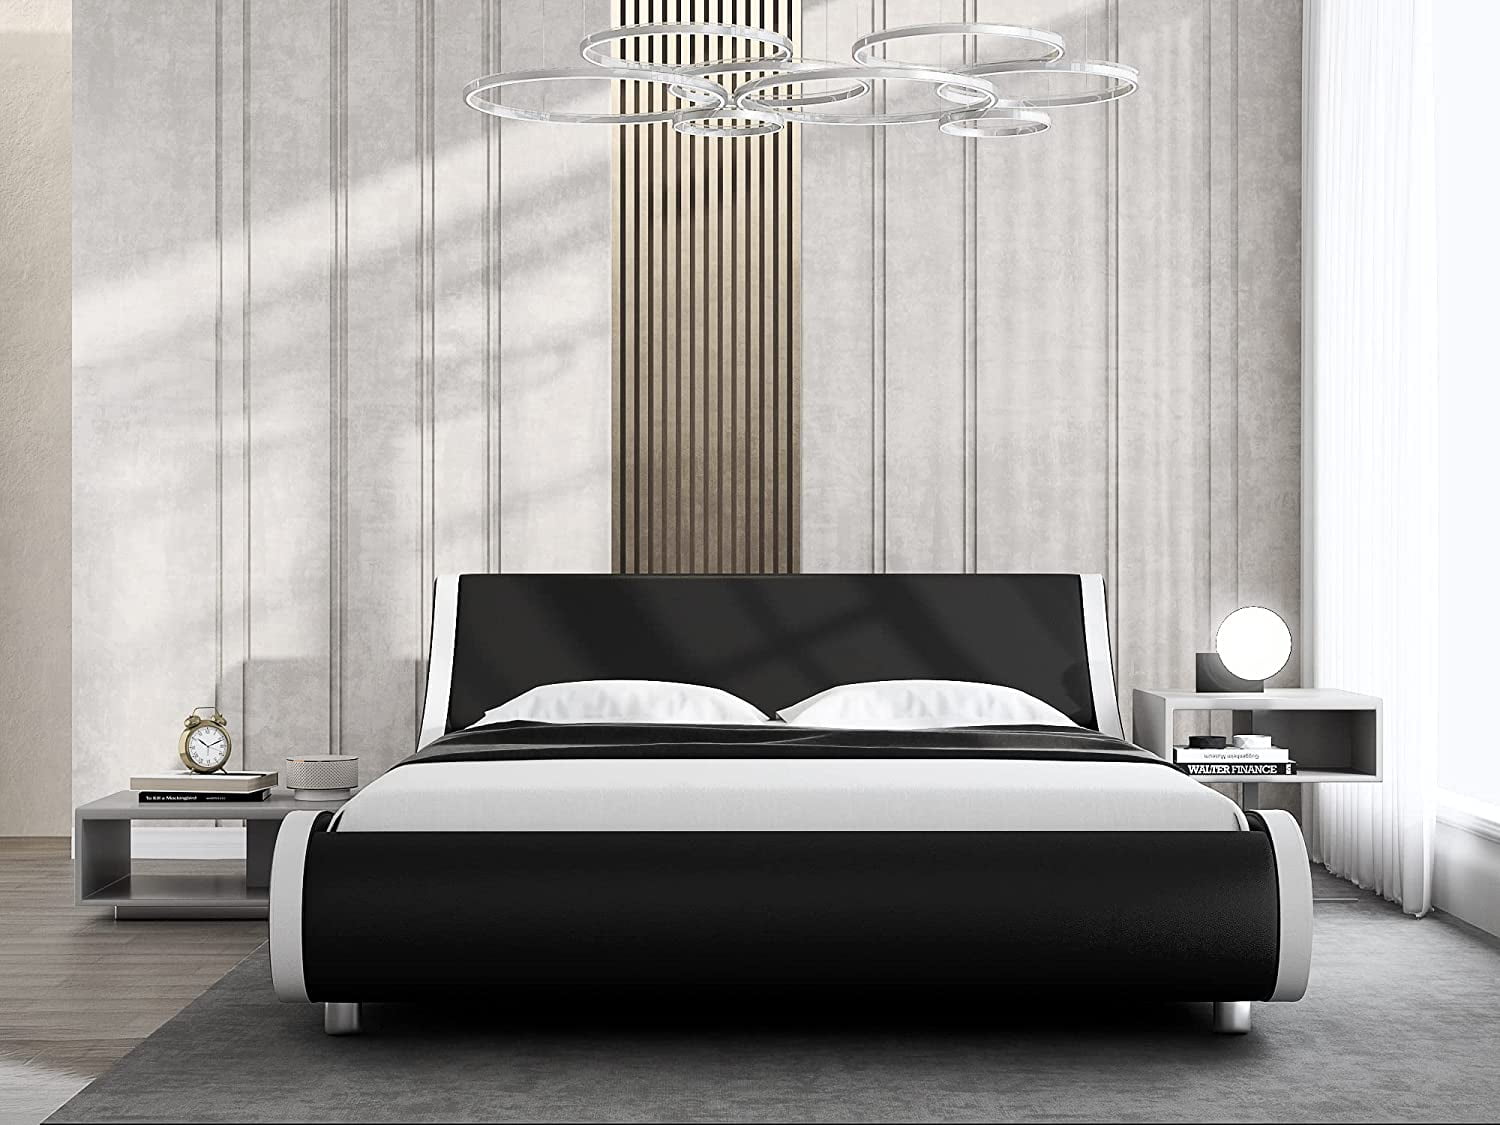 Mainstays 12 Adjustable Metal Bed, Mainstays 12 Adjustable Metal Bed Frame Black Twin King Size